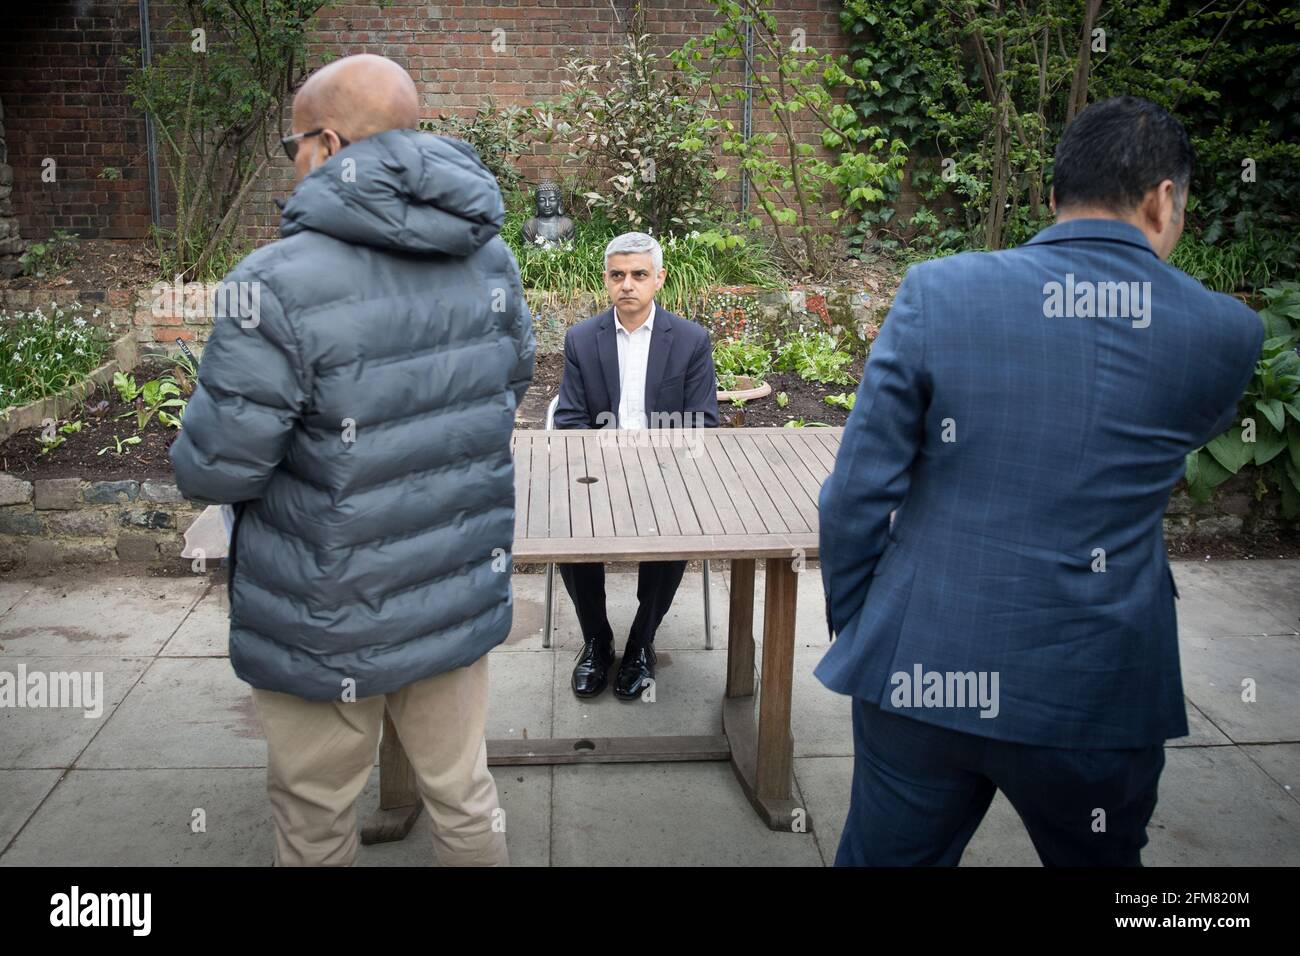 Der Bürgermeister von London, Sadiq Khan, wird von bangladeschischen Medien während eines Besuchs auf der Spitalfields City Farm interviewt, während er sich dafür einsetzt, am 6. Mai zum Londoner Bürgermeister wiedergewählt zu werden.Bilddatum: Mittwoch, 21. April 2021. Stockfoto